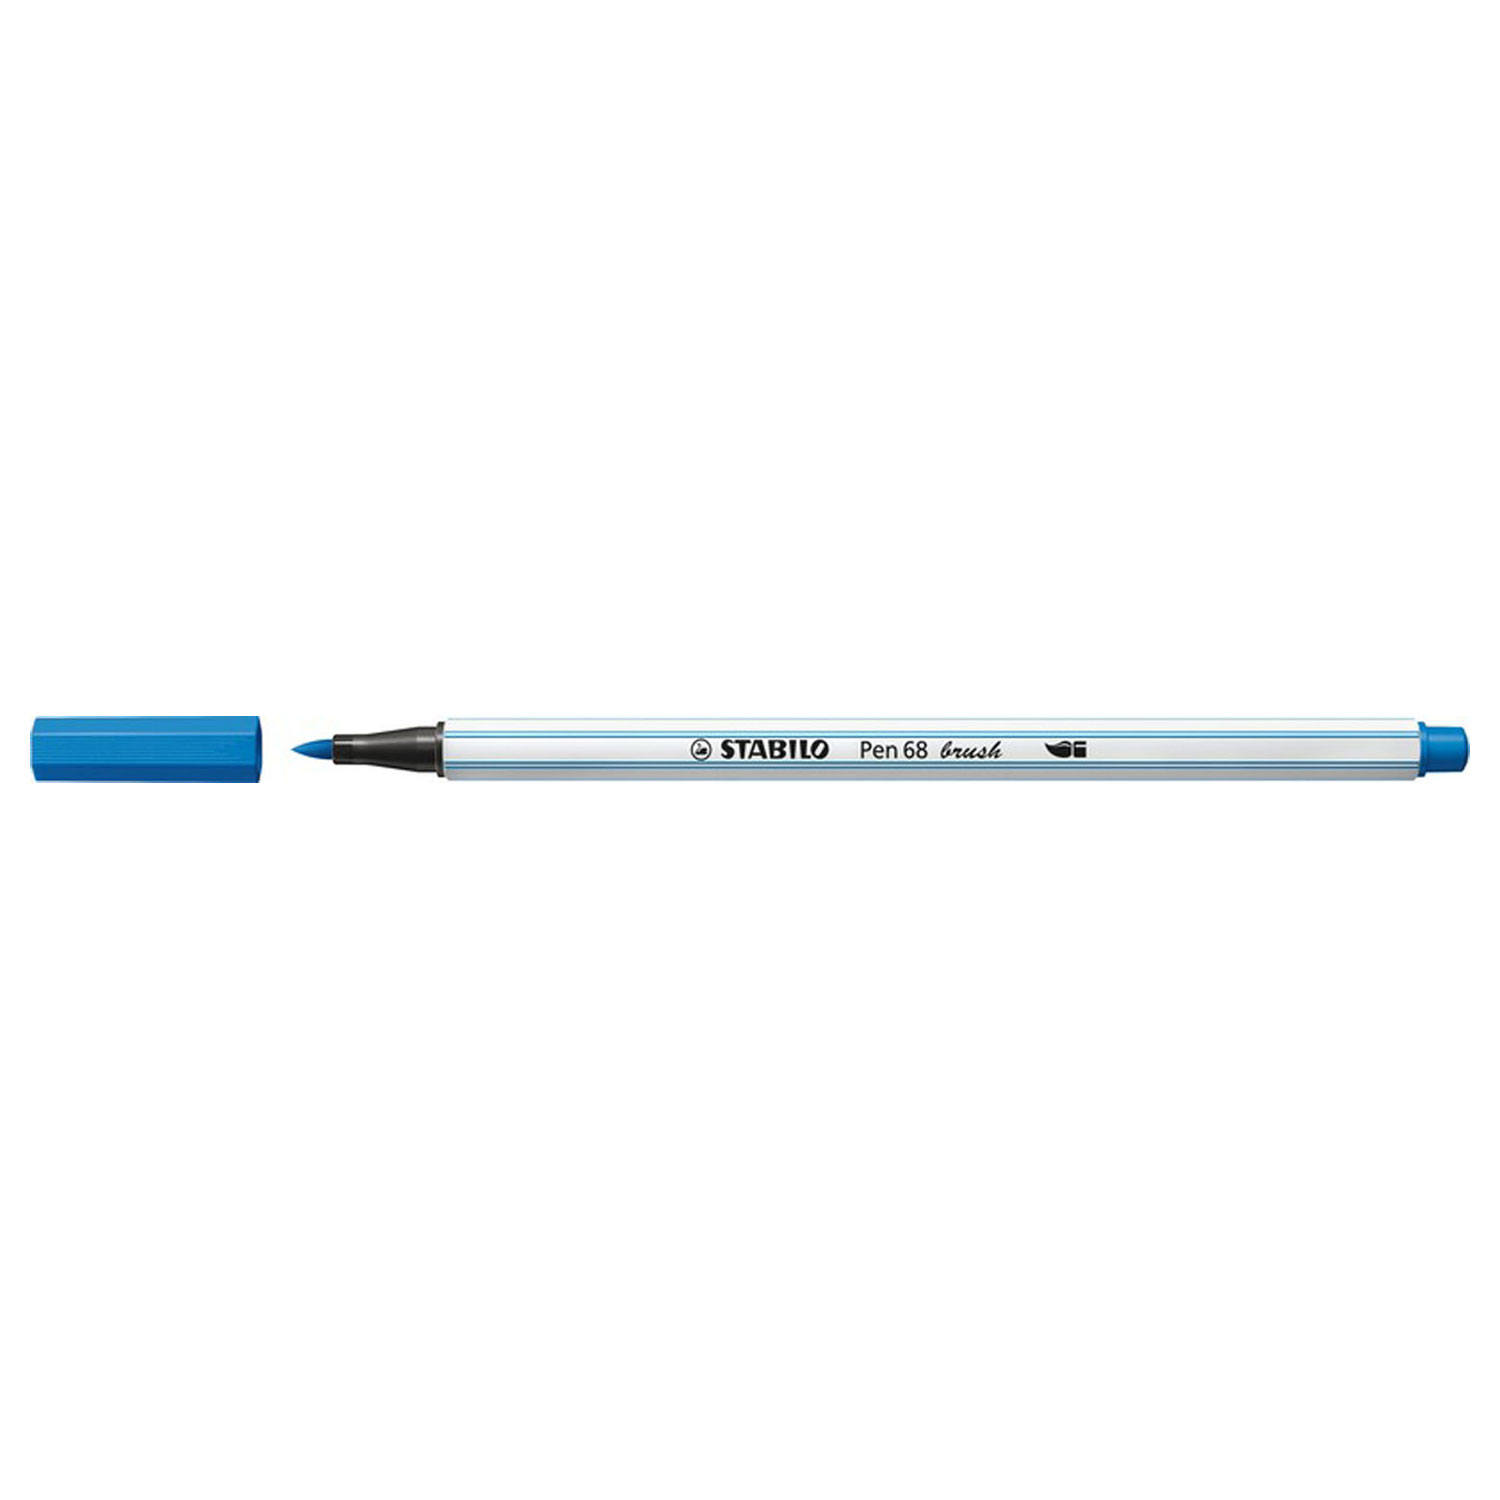 STABILO Pen 68 Brush - Feutre - Bleu foncé (41)